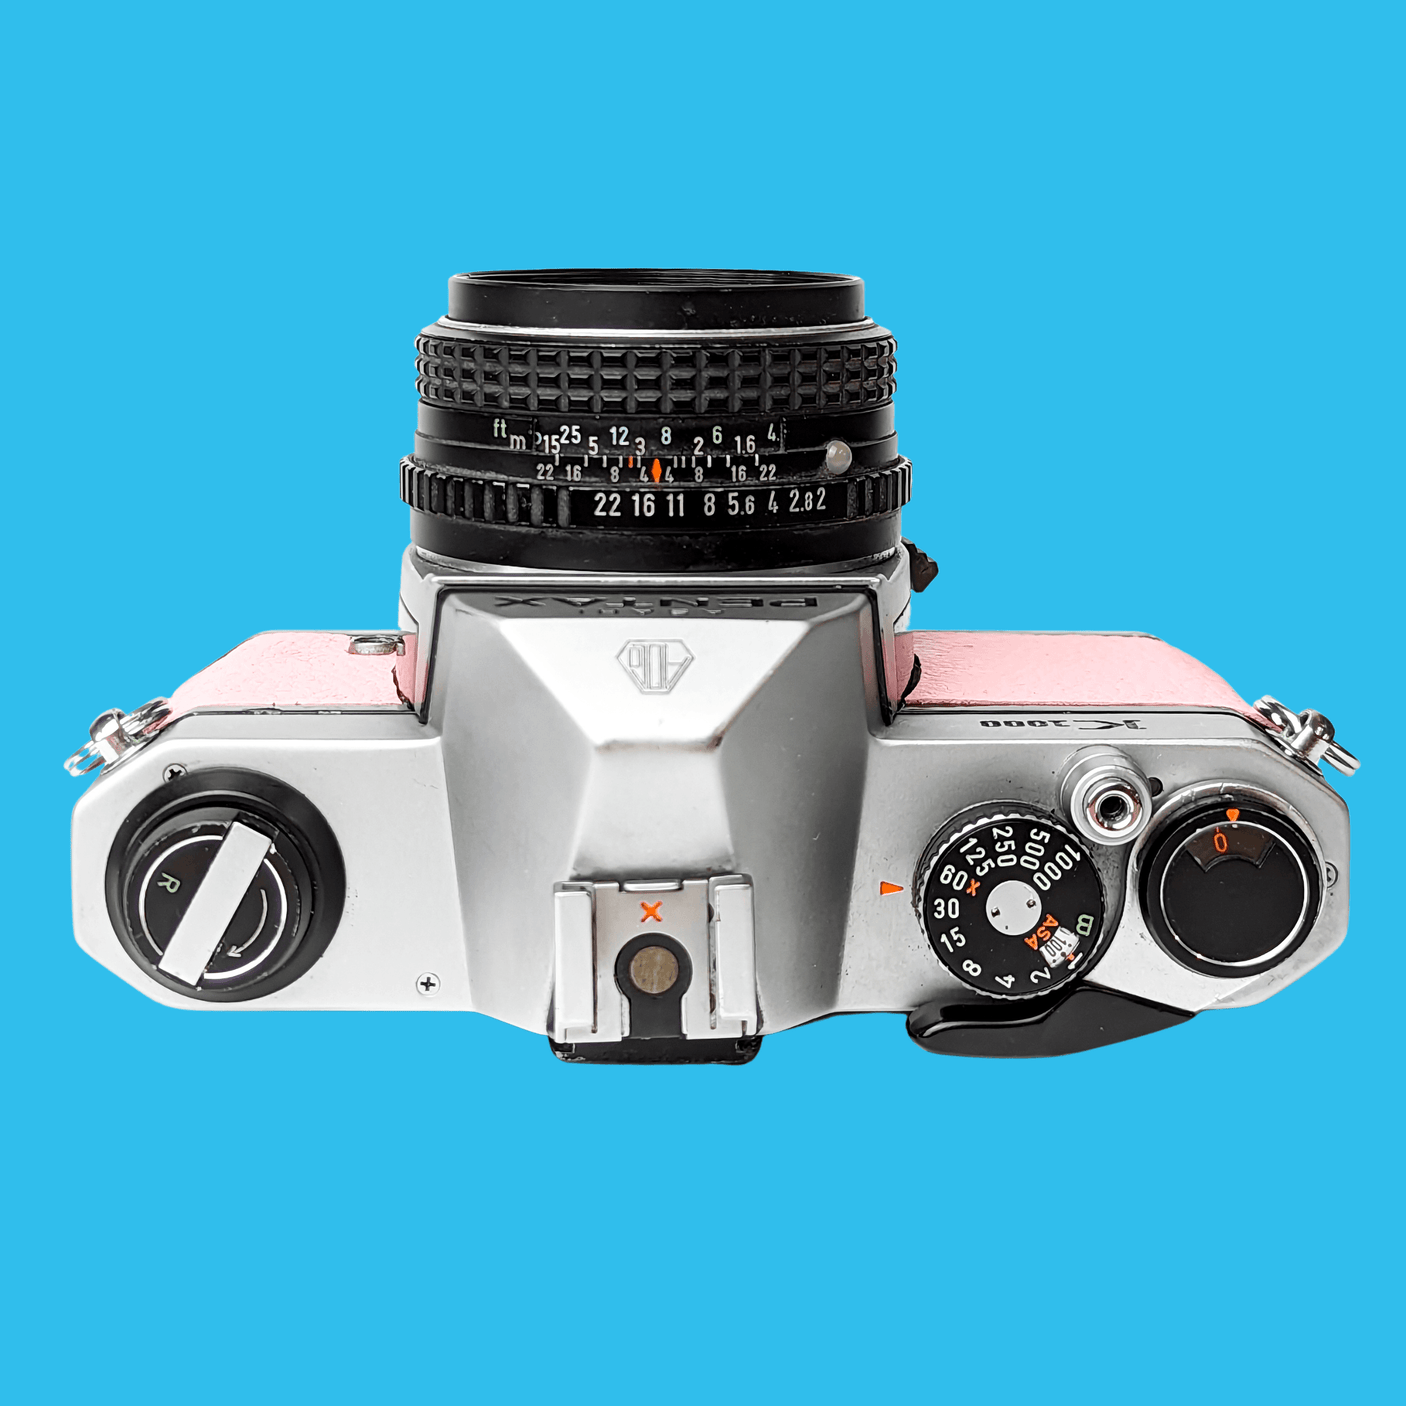 Pentax K1000 Pink Leather Vintage SLR 35mm Film Camera with Pentax f/2 50mm Prime Lens.